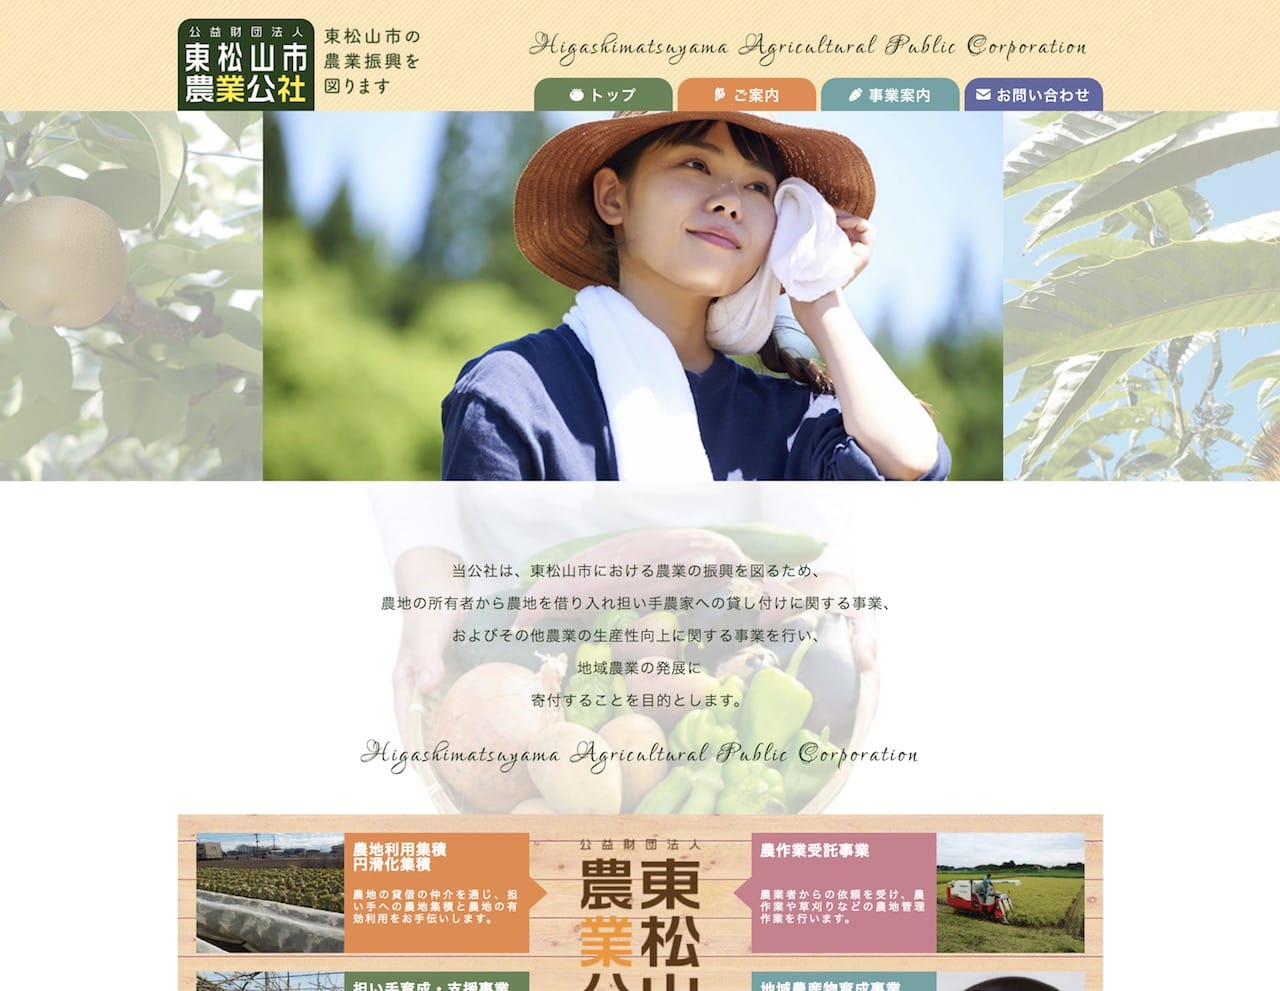 東松山市農業公社ホームページ トップ